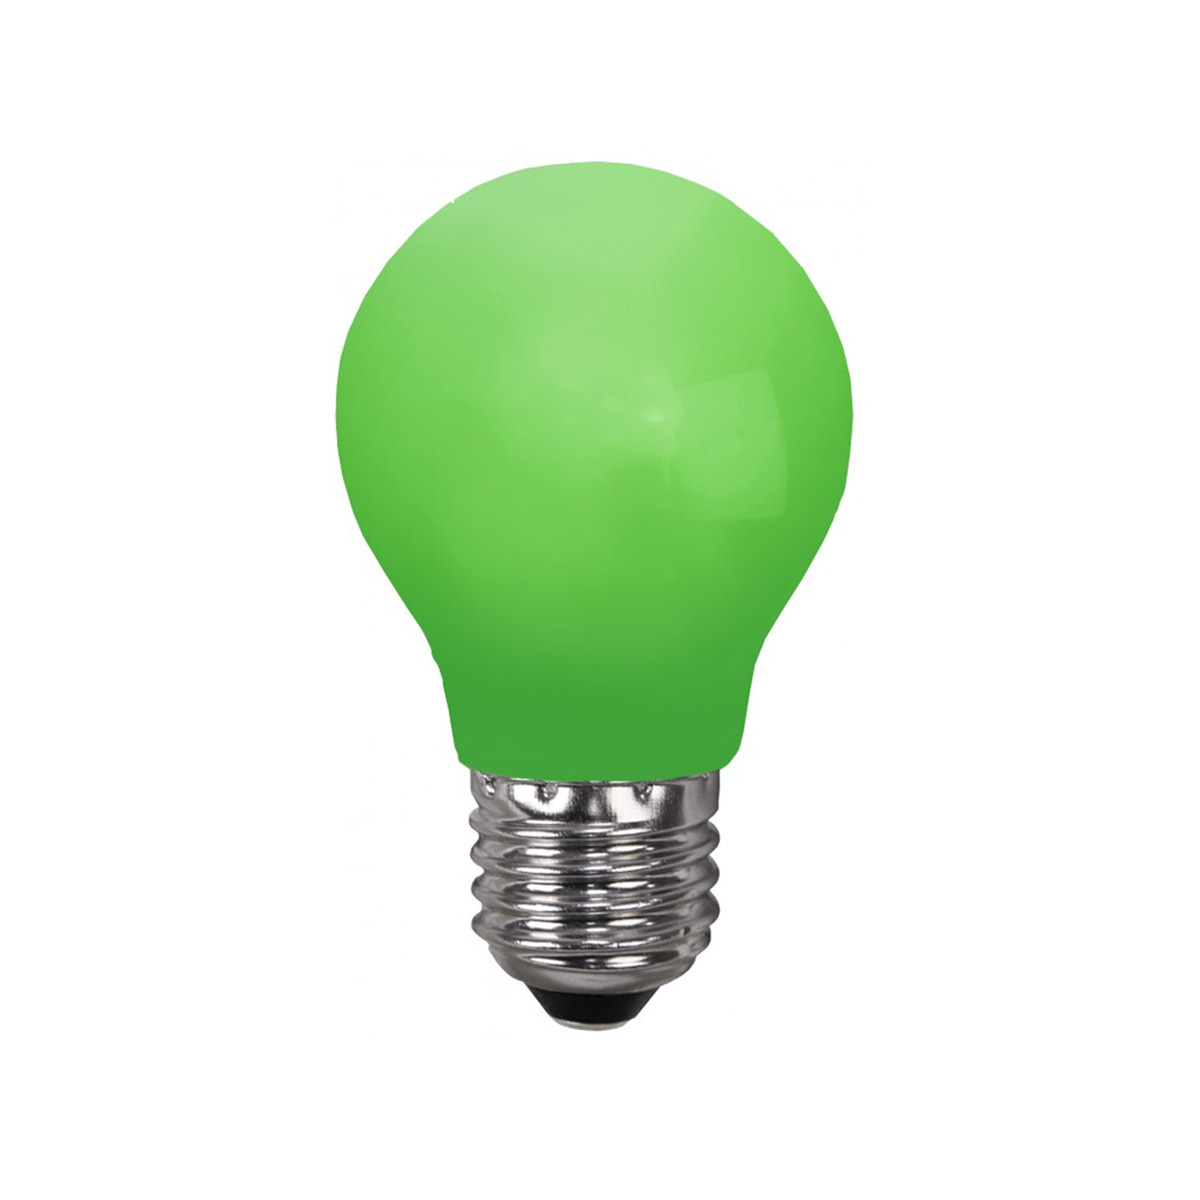 LED Leuchtmittel DEKOPARTY grün - E27 - 0,9W LED - schlagfestes Pol... von StarTrading